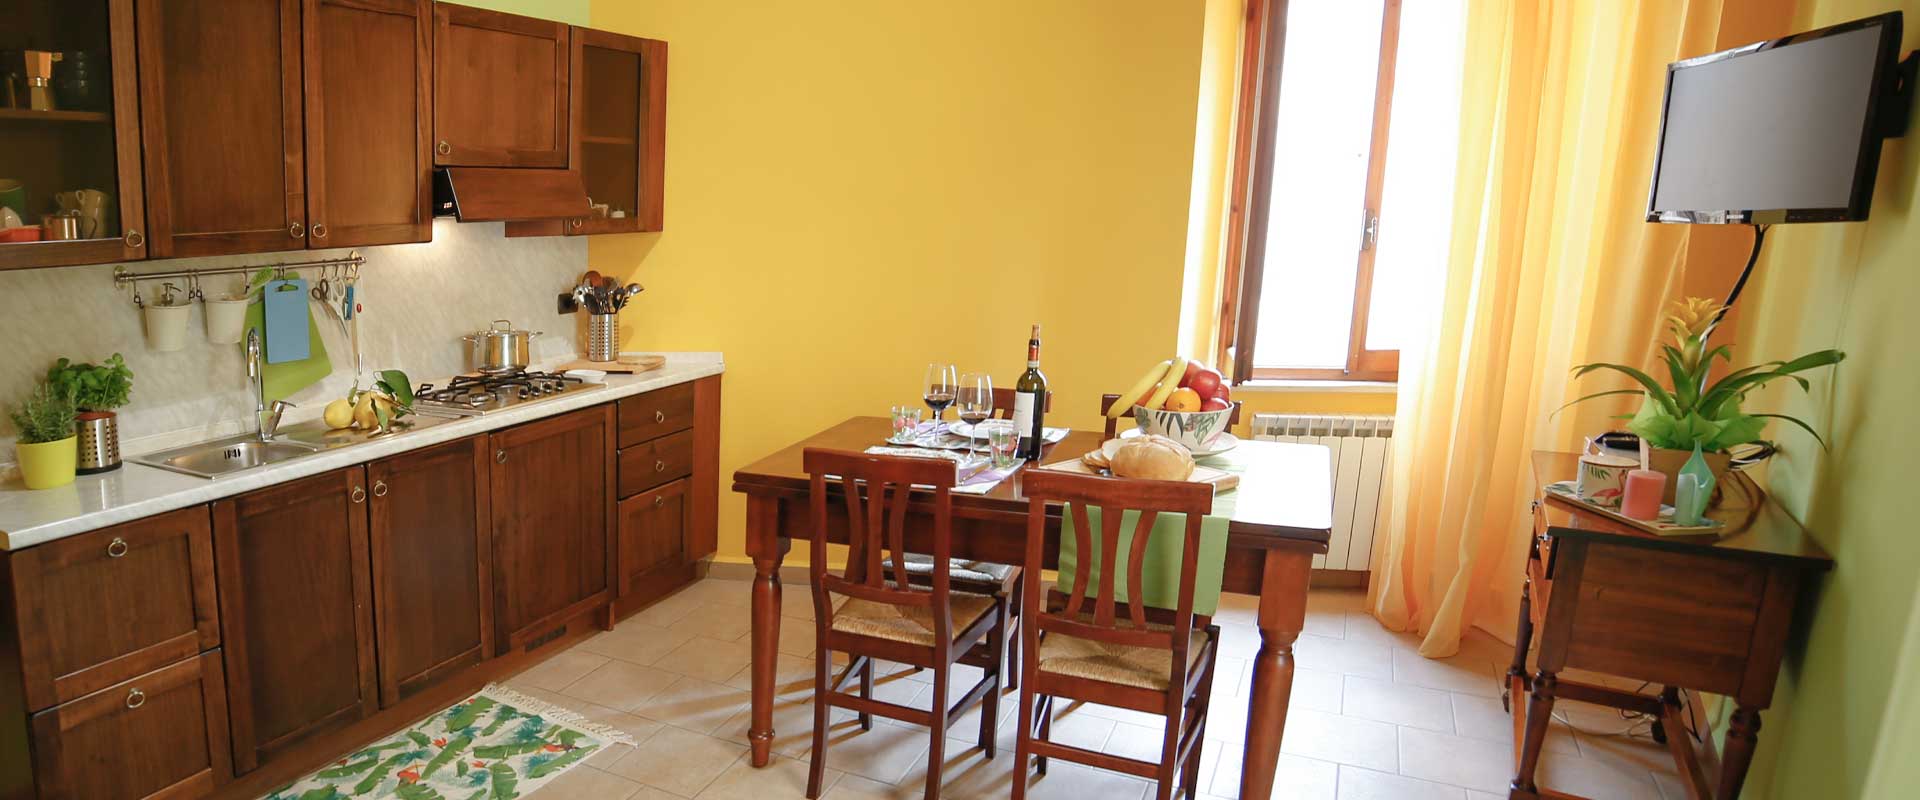 Talia è un luminoso appartamento vacanze per 4 persone dall'atmosfera rivitalizzante. Le Muse Appartamenti Bevagna centro storico, Umbria, Italia